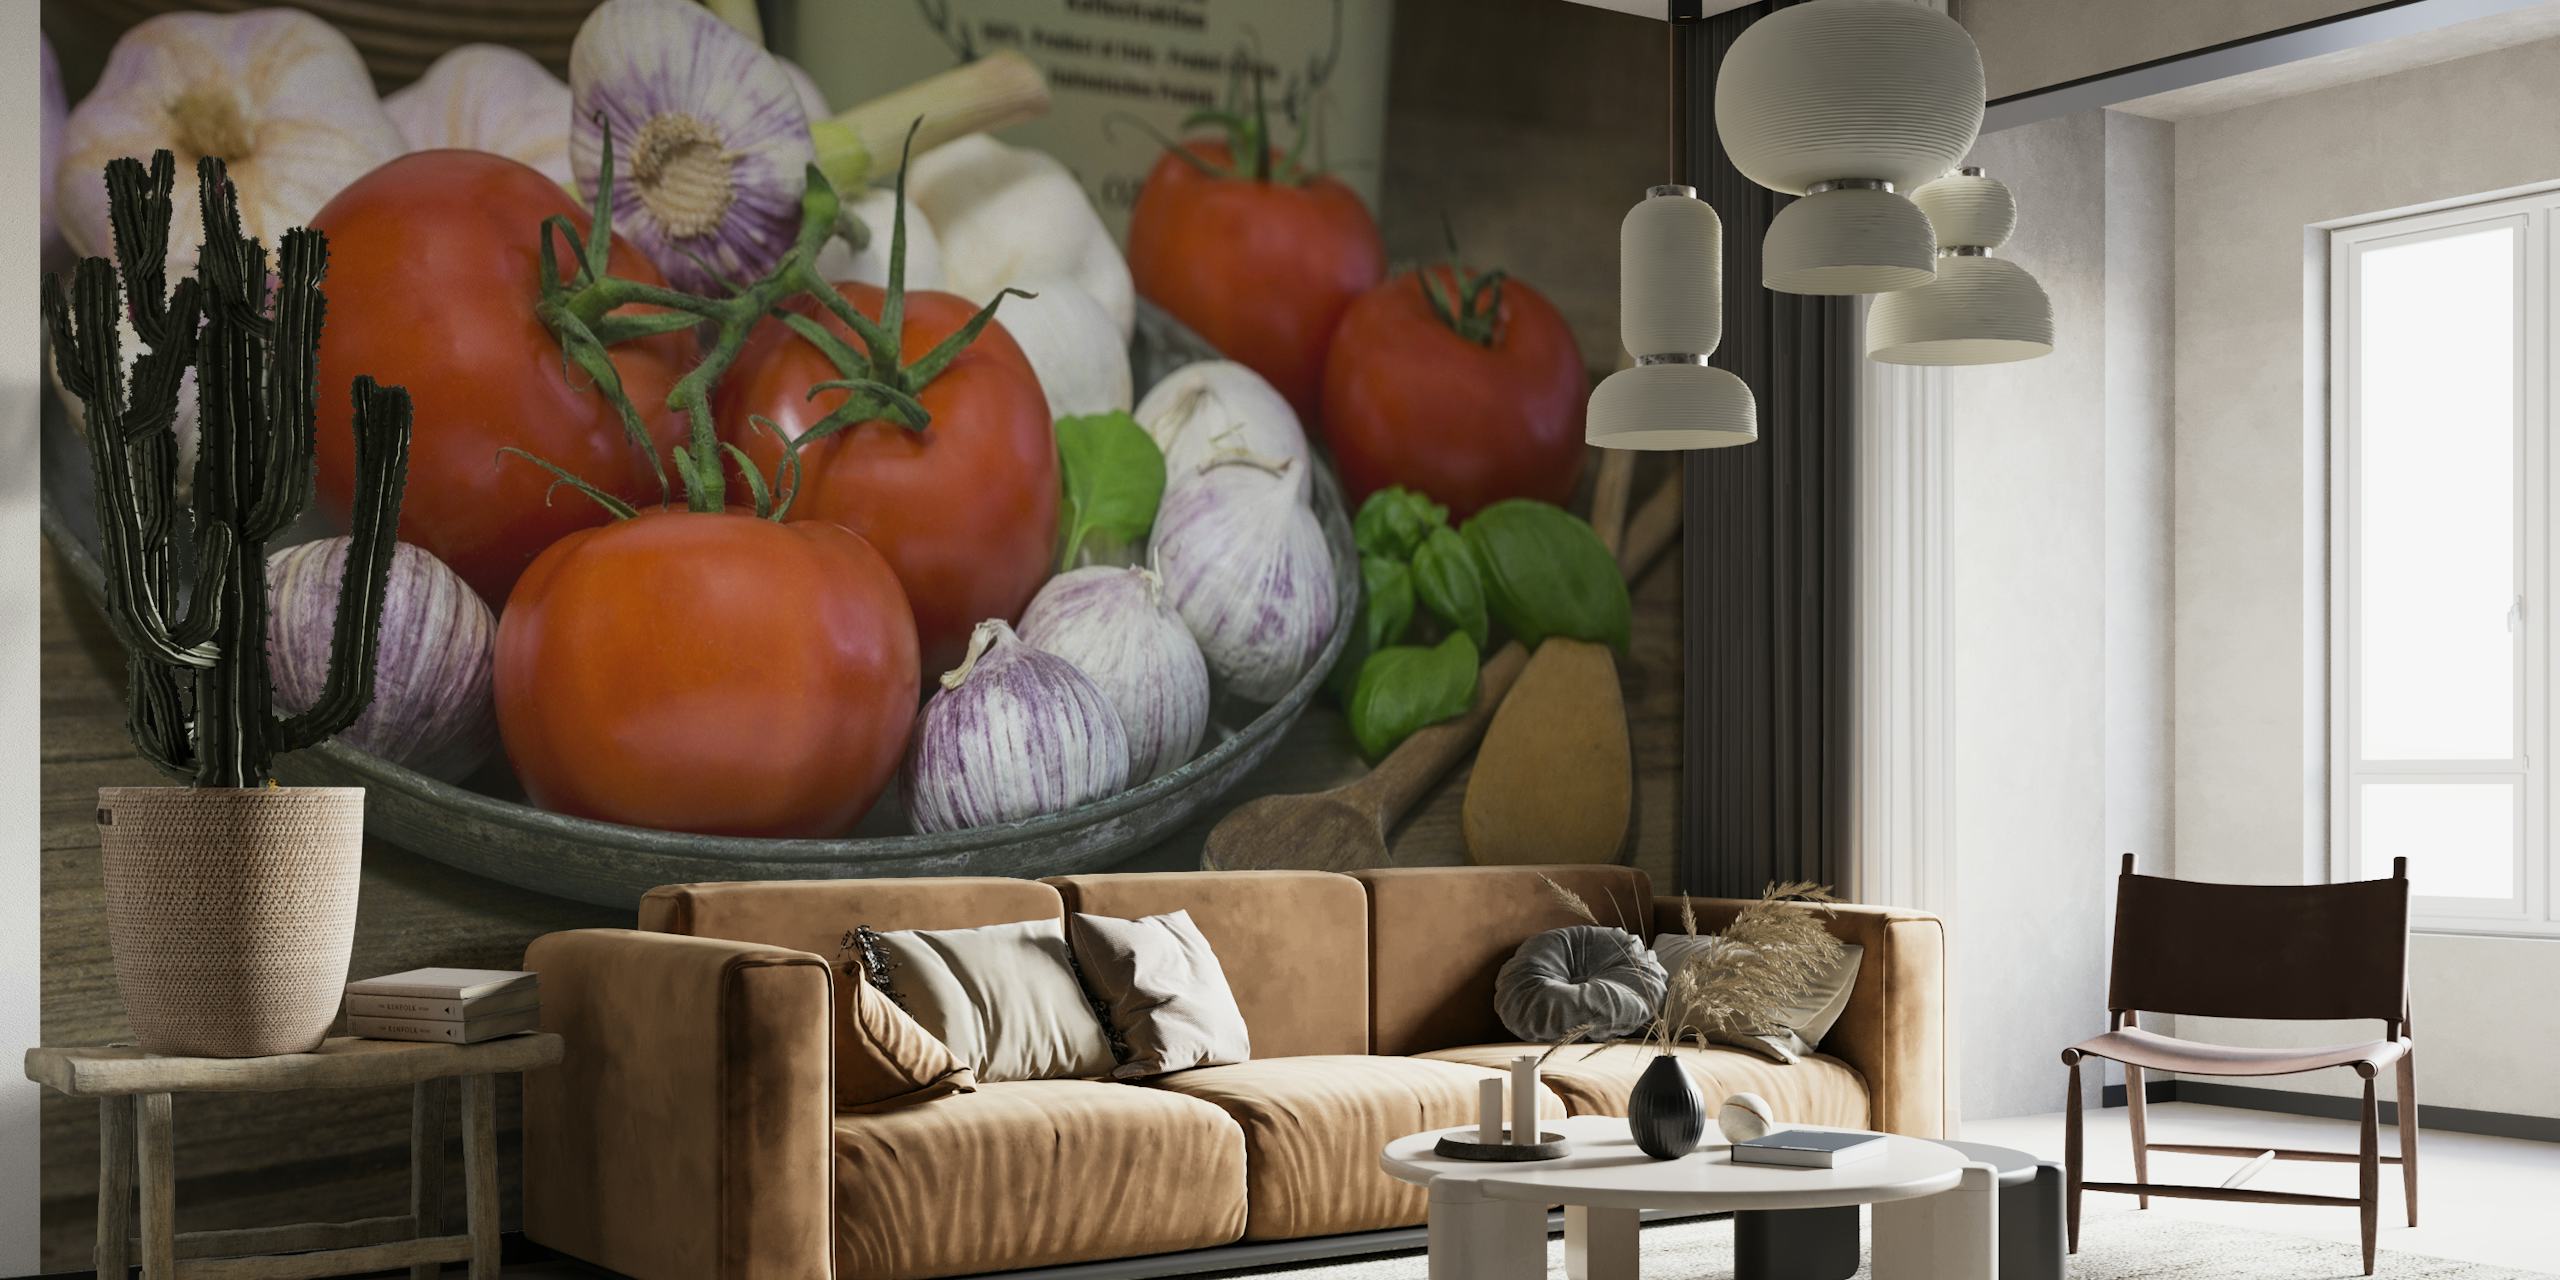 Seinämaalaus italialaisesta keittiöstä tomaateilla, valkosipulilla ja basilikalla puupöydällä